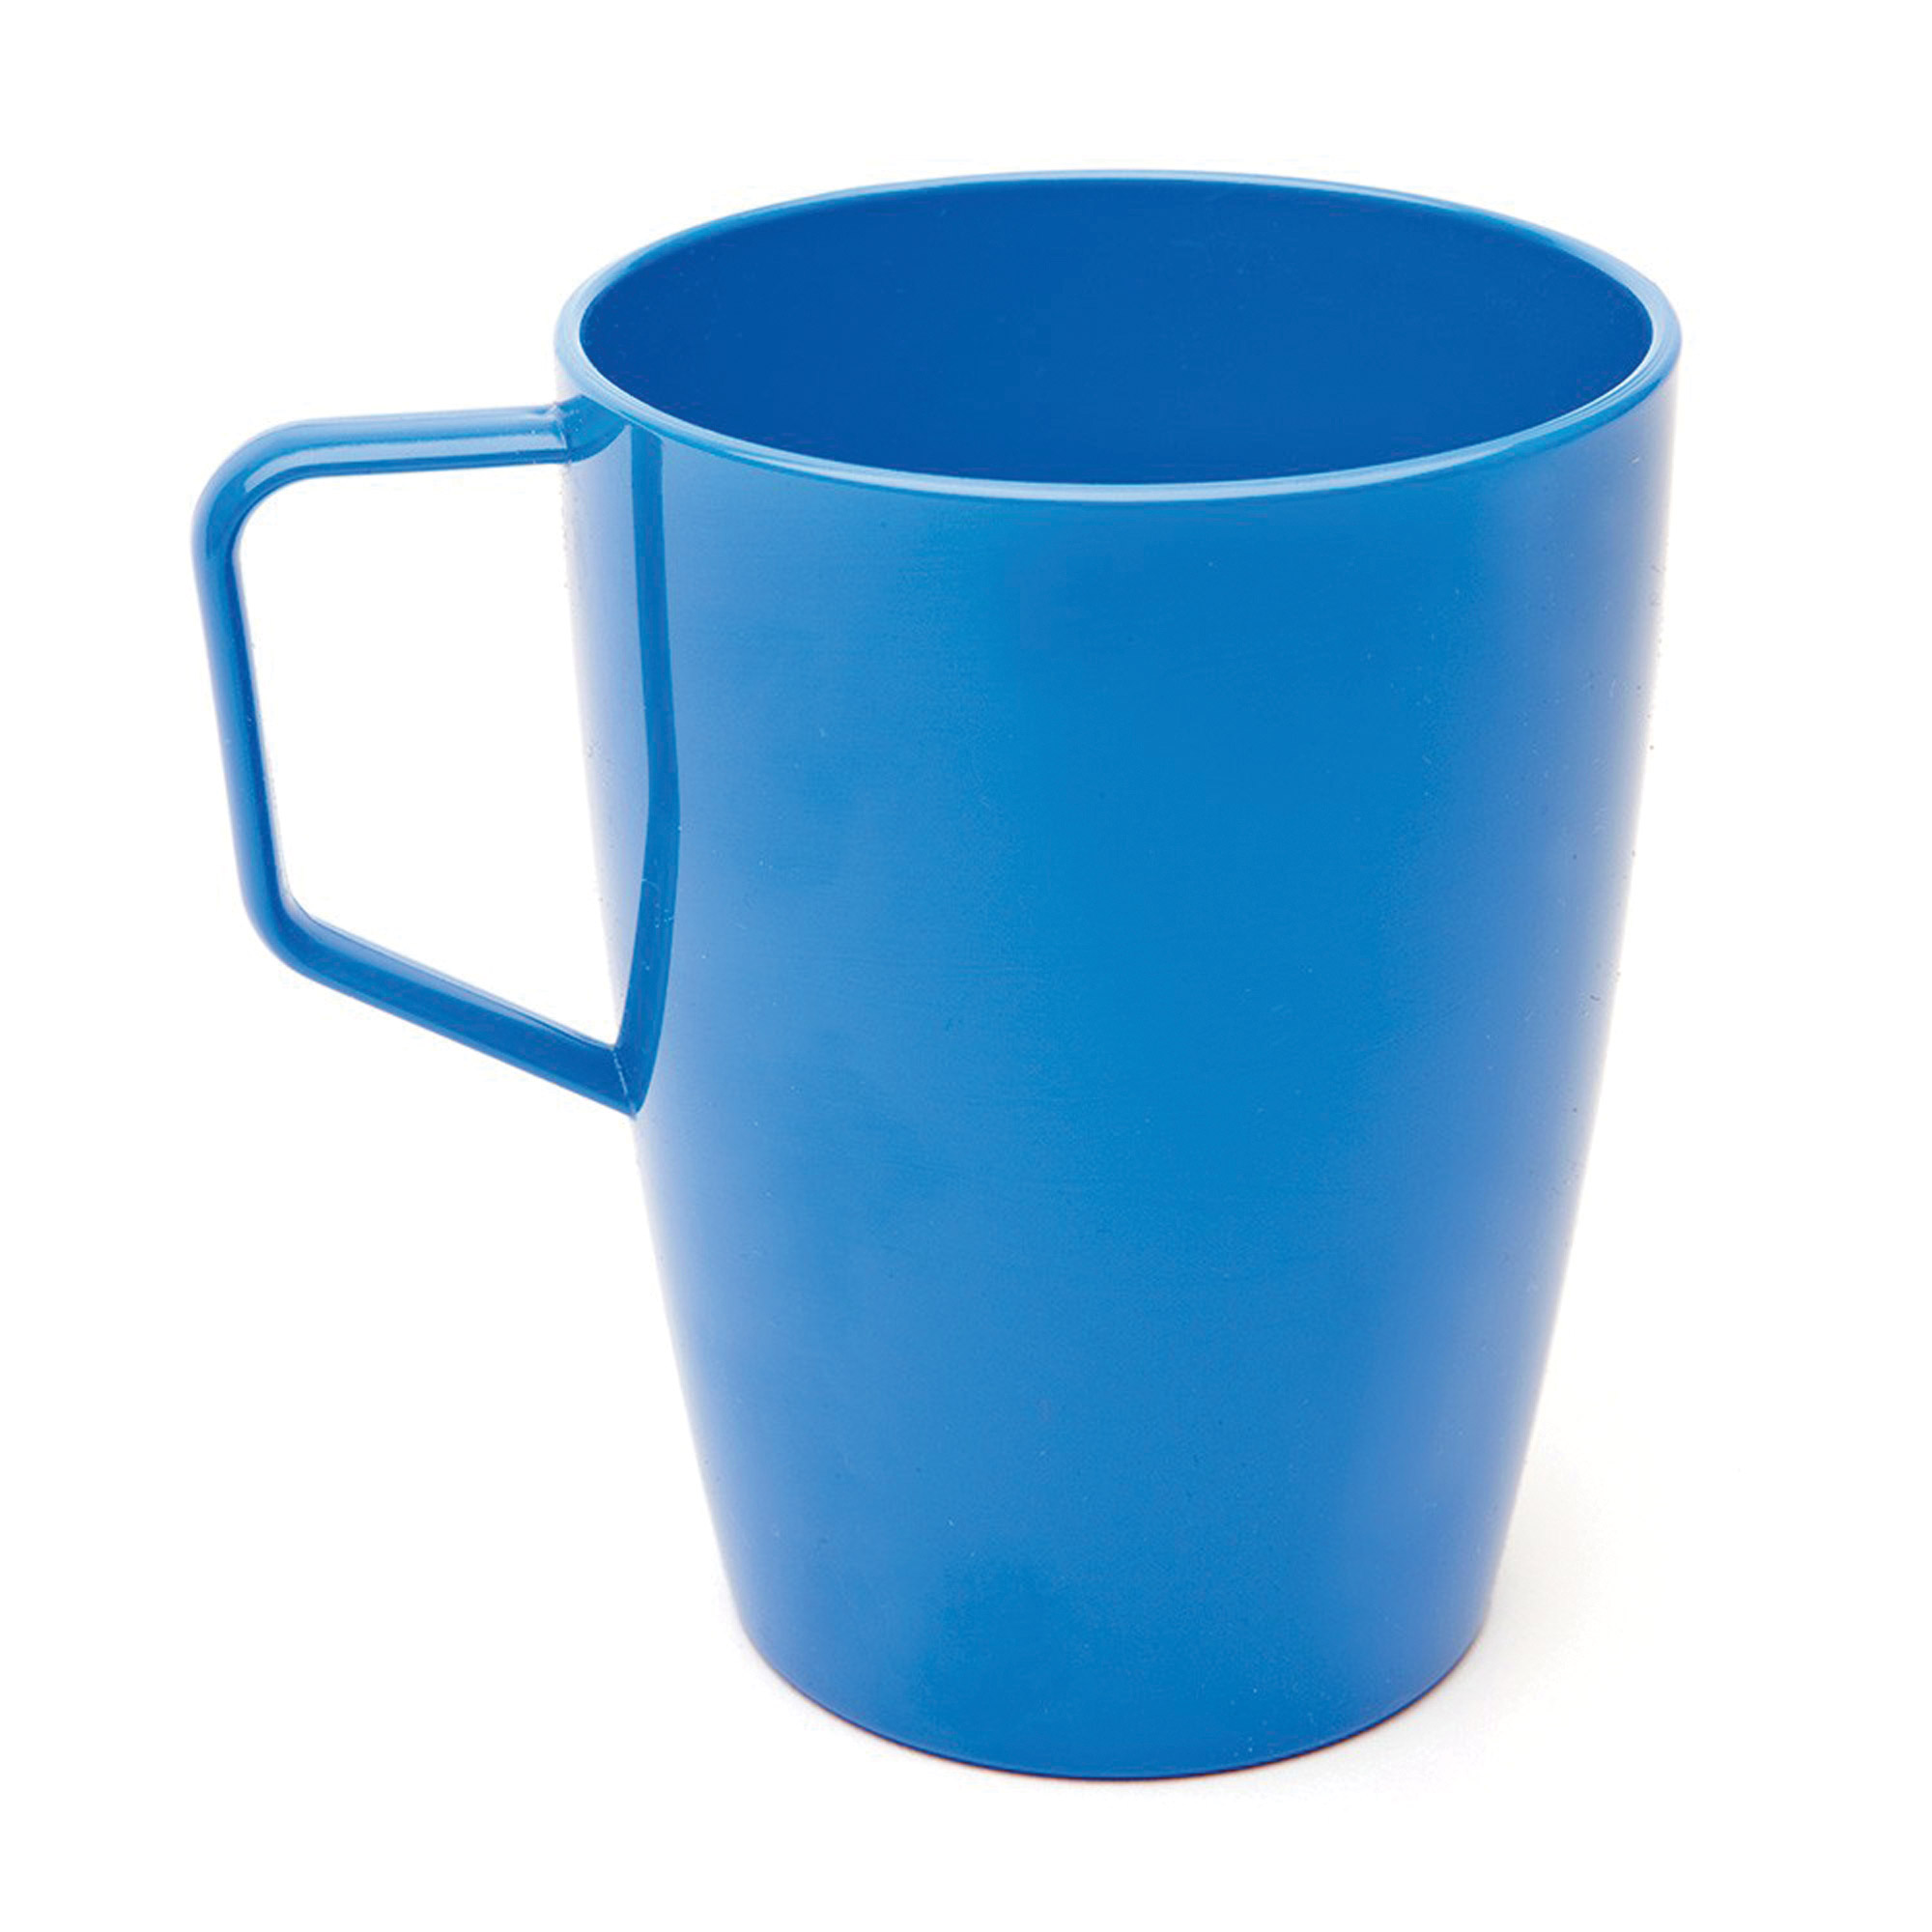 Polycarbonate Mug Med Blue 28cl - Each